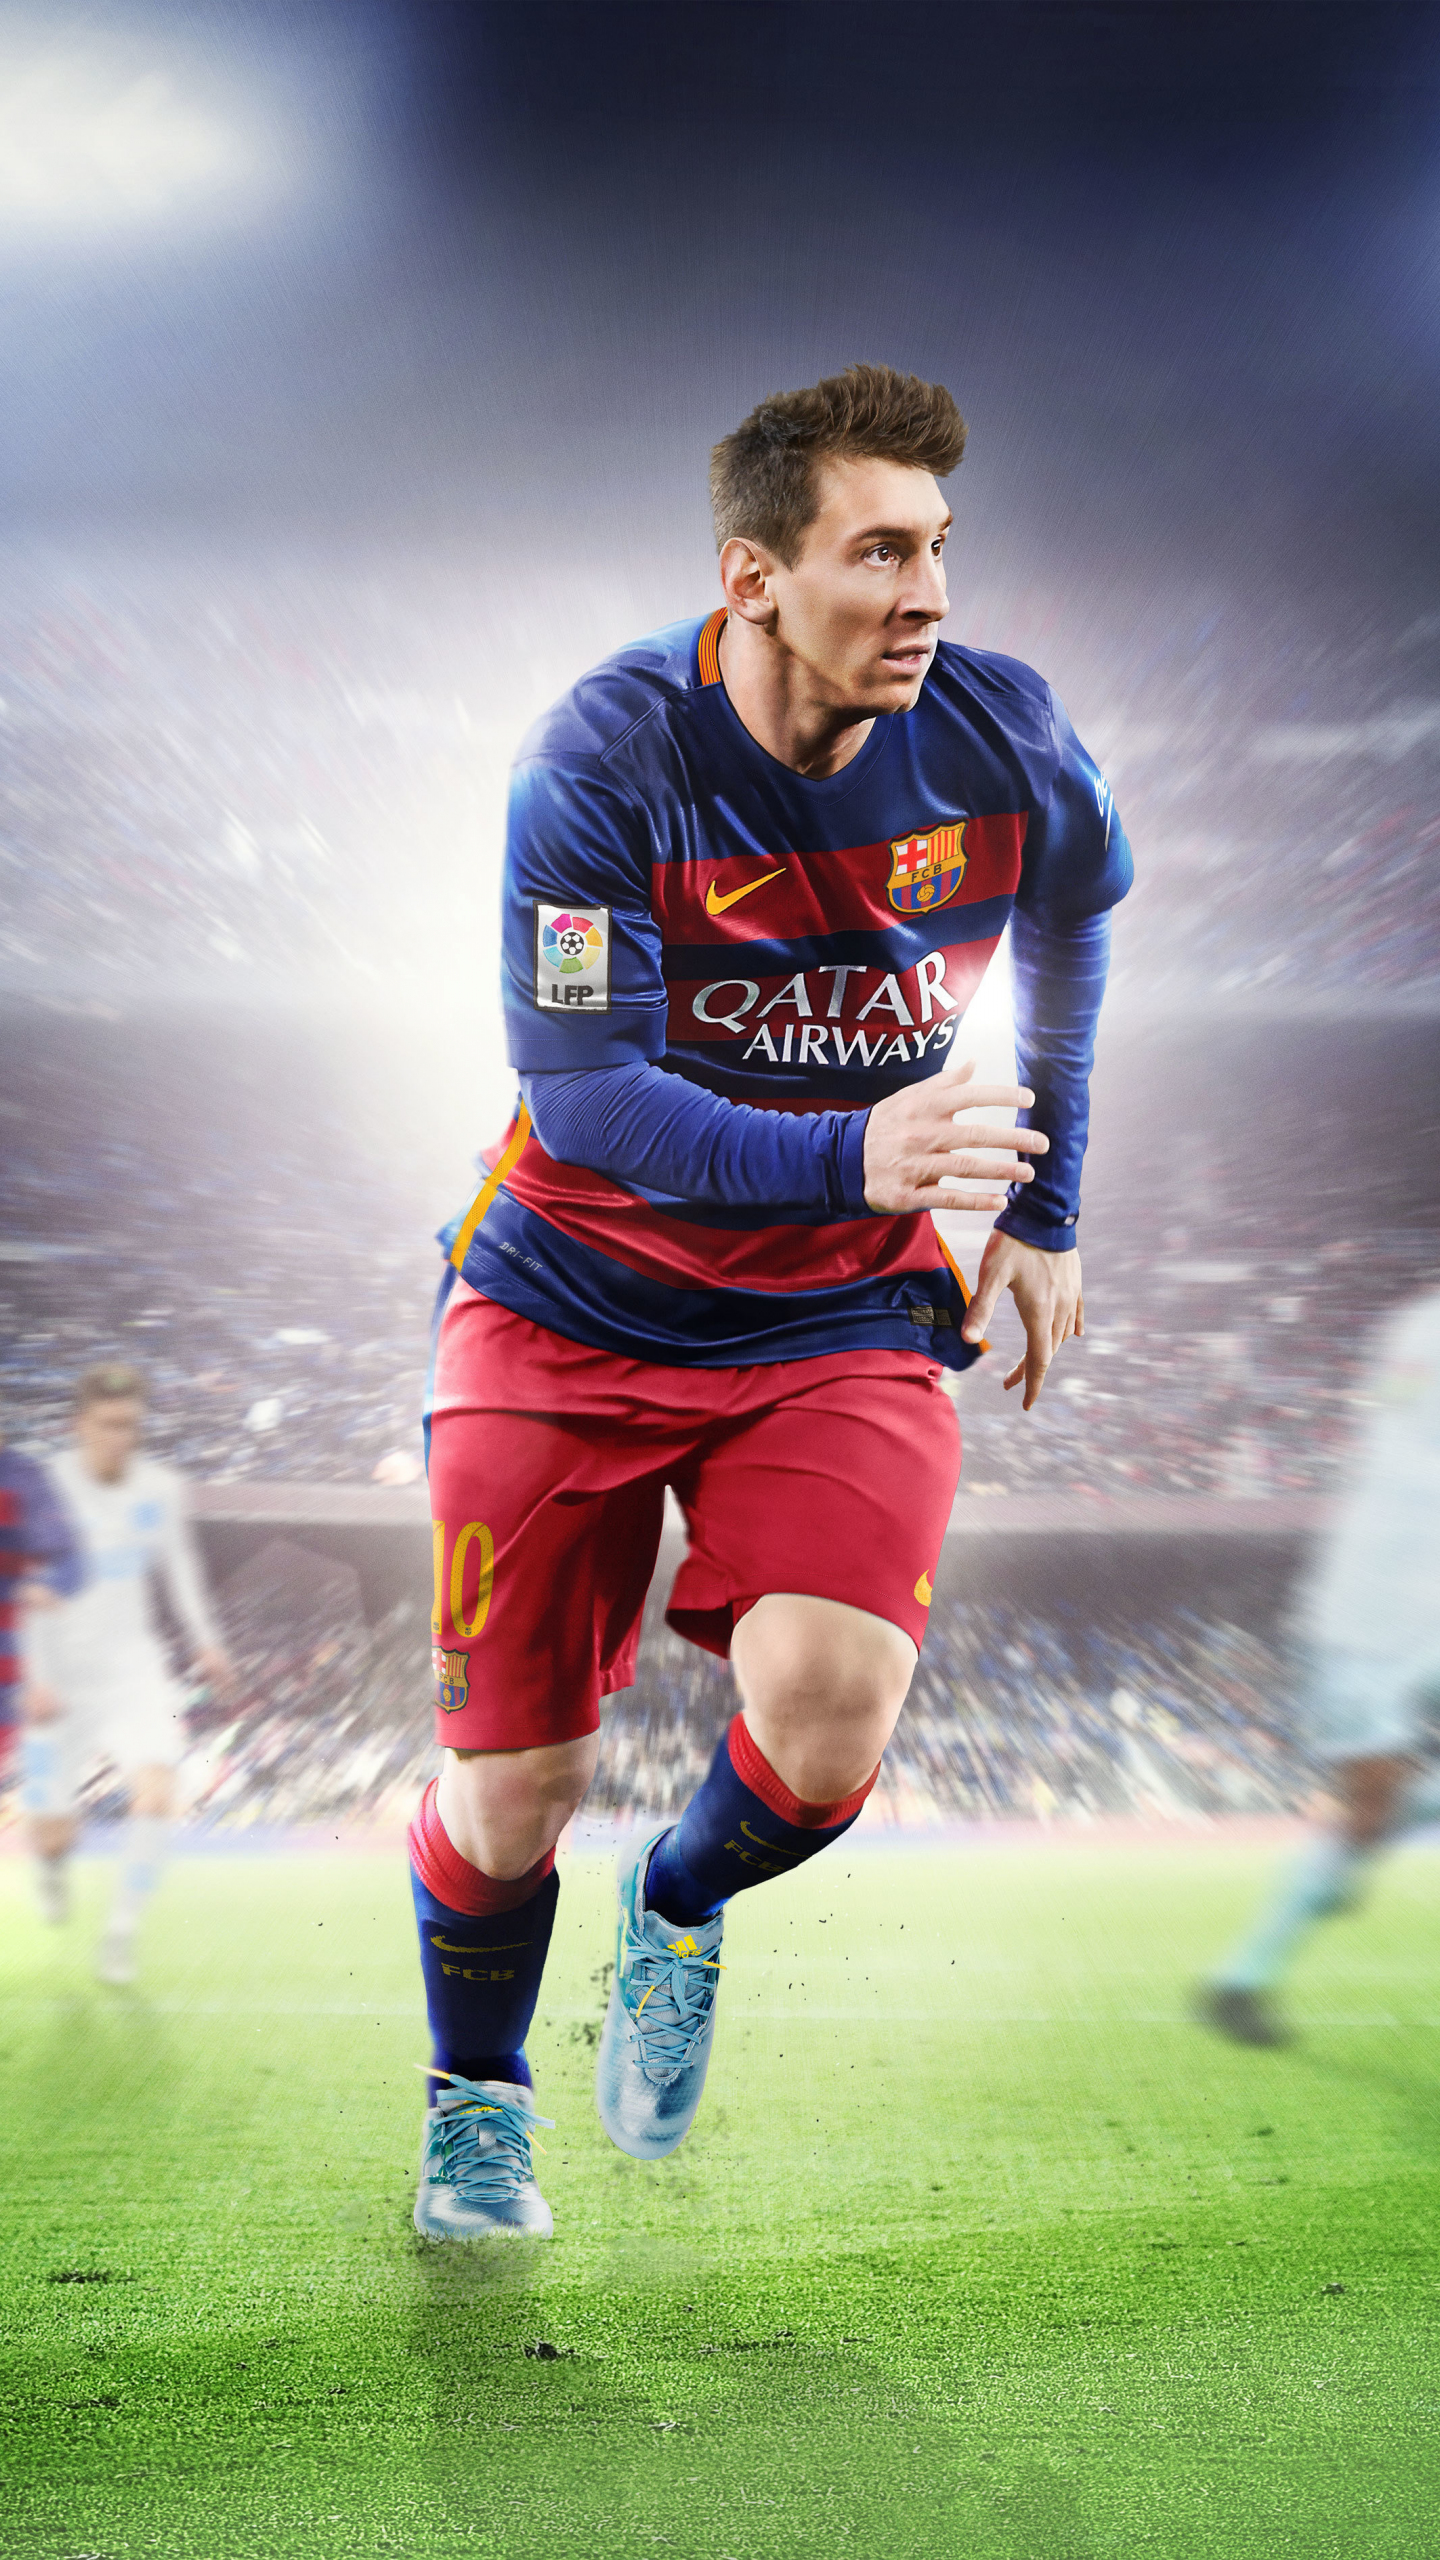 Dành cho những Fan Messi, hãy tải Lionel Messi Wallpaper để sở hữu bộ sưu tập hình ảnh đẹp mắt của cầu thủ ghi bàn hàng đầu thế giới. Tưởng tượng nếu điện thoại của bạn trưng bày hình ảnh siêu sao này đầy ấn tượng?